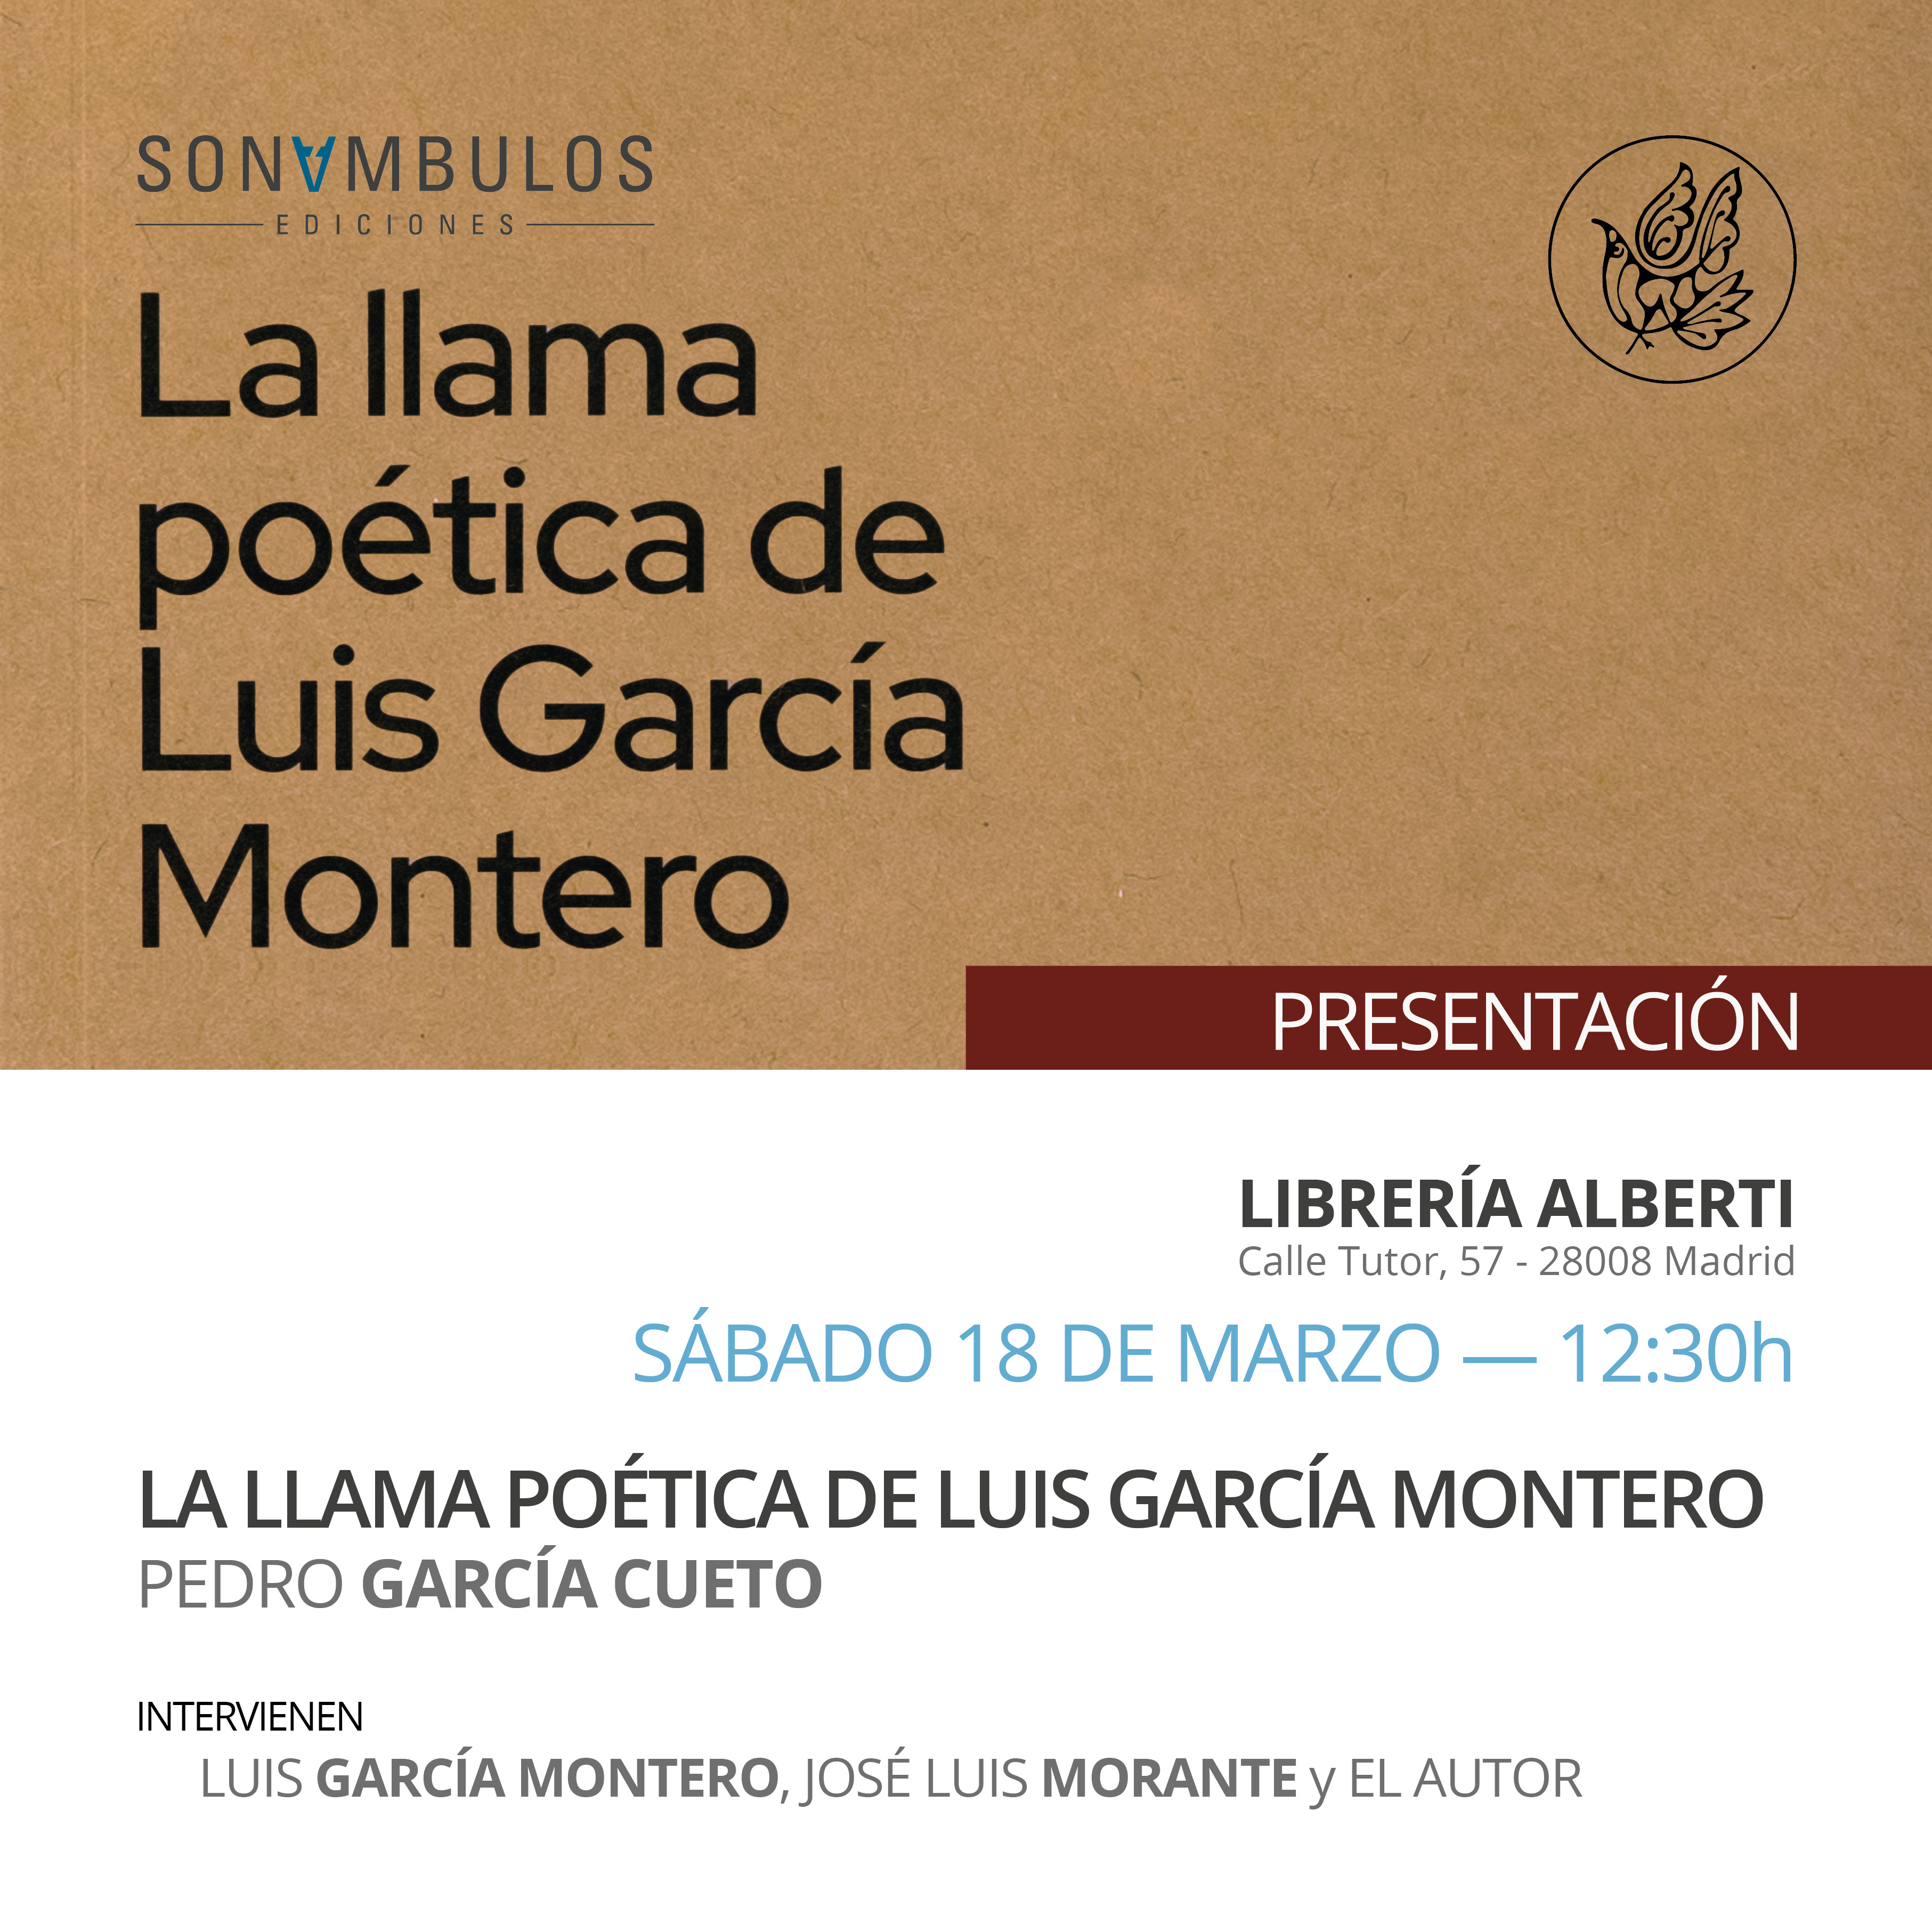 PEDRO GARCÍA CUETO, La llama poética de Luis García Montero (Sonámbulos)